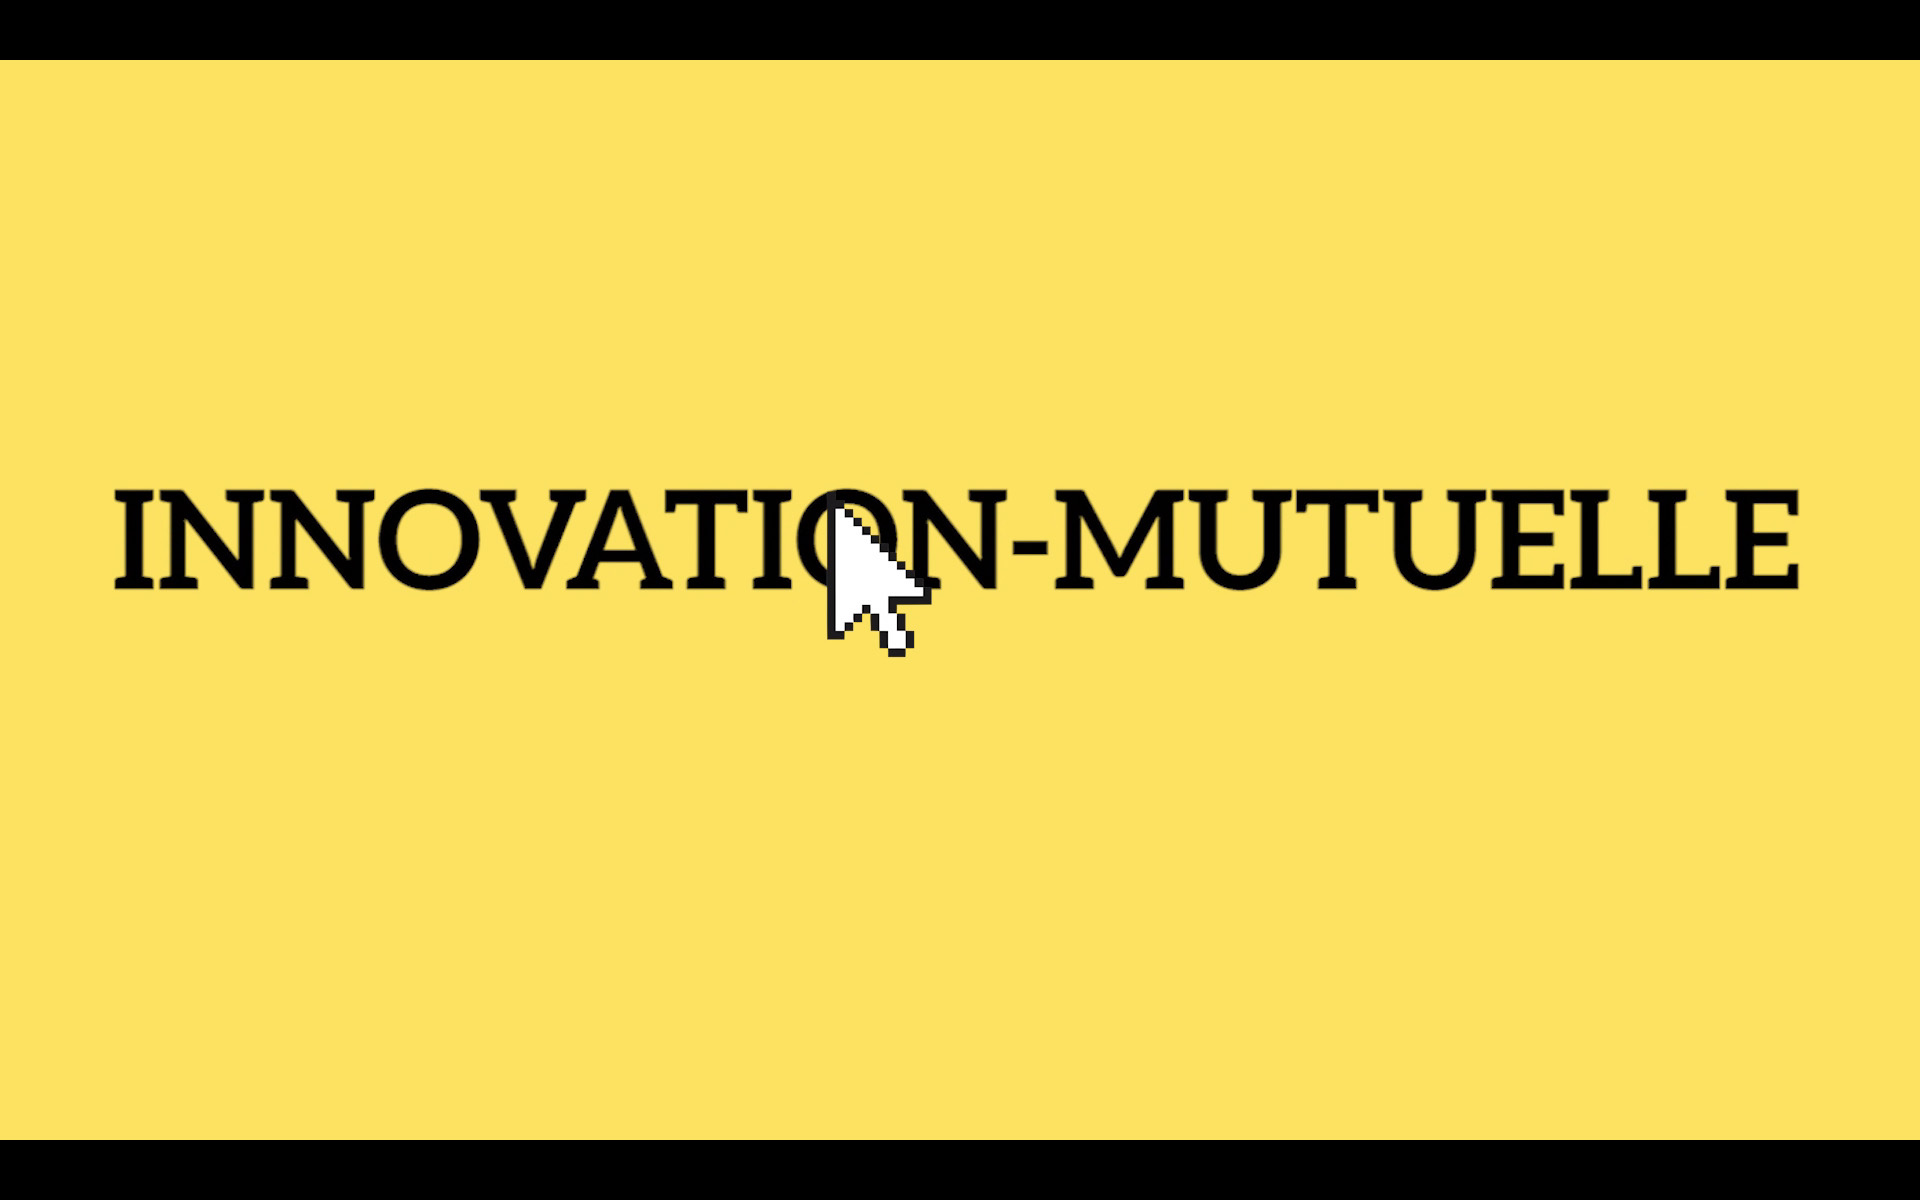 Innovation-mutuelle.fr : un point de rencontre entre les mutuelles et les acteurs de l’innovation